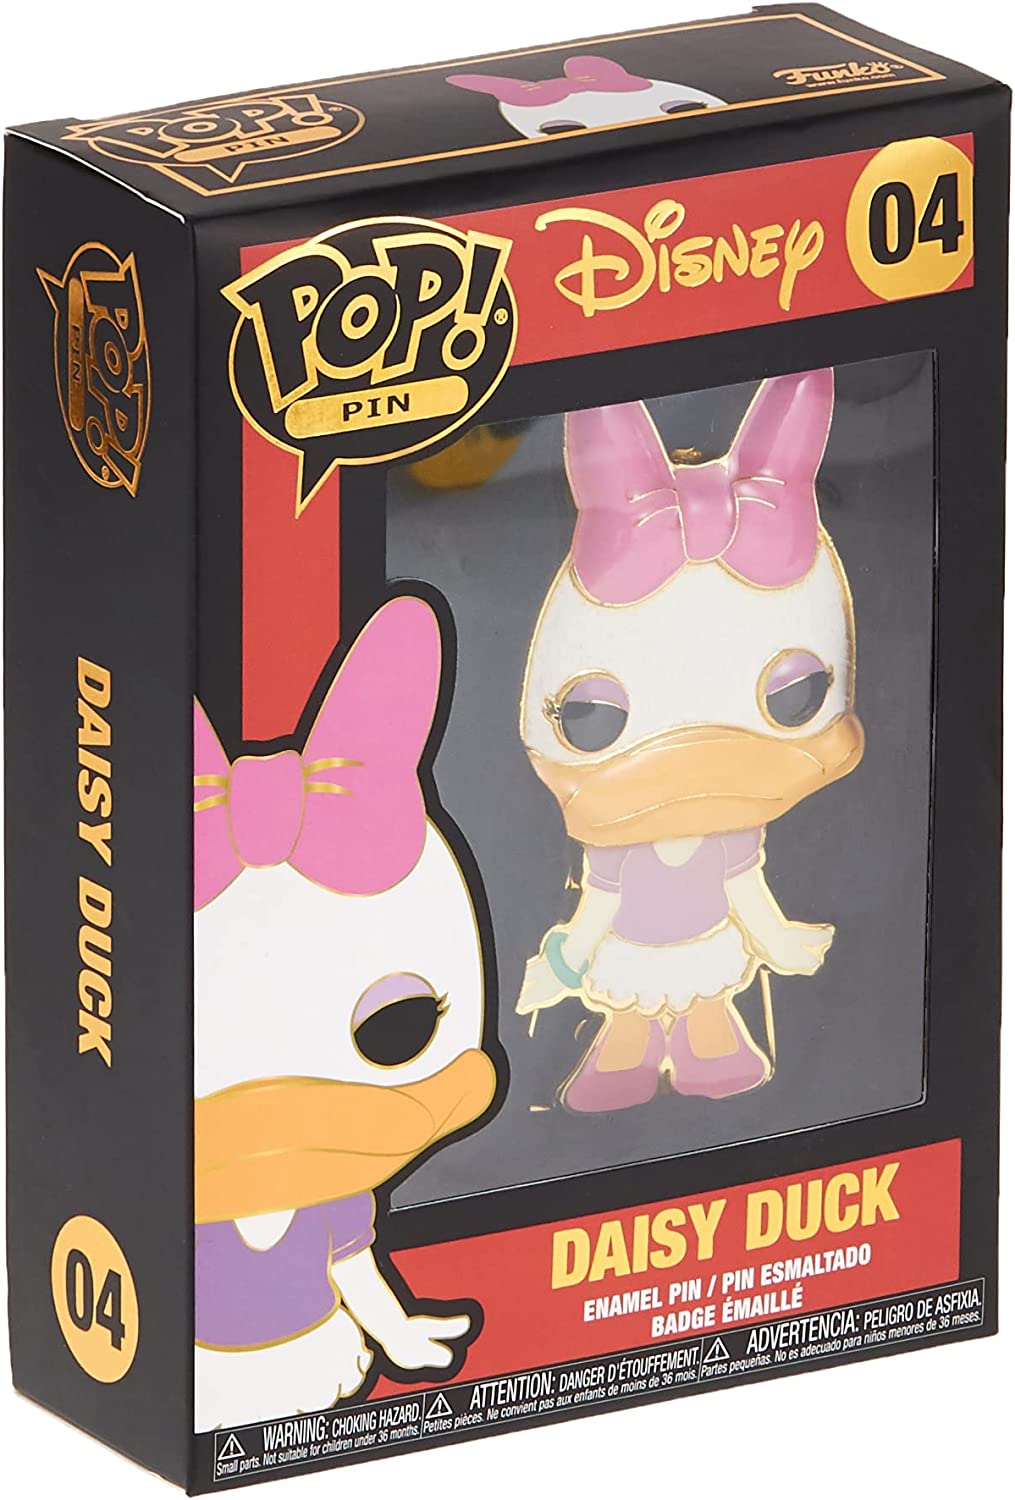 Disney Daisy Duck Funko 31254 Pop! Vinyl Nr. 04